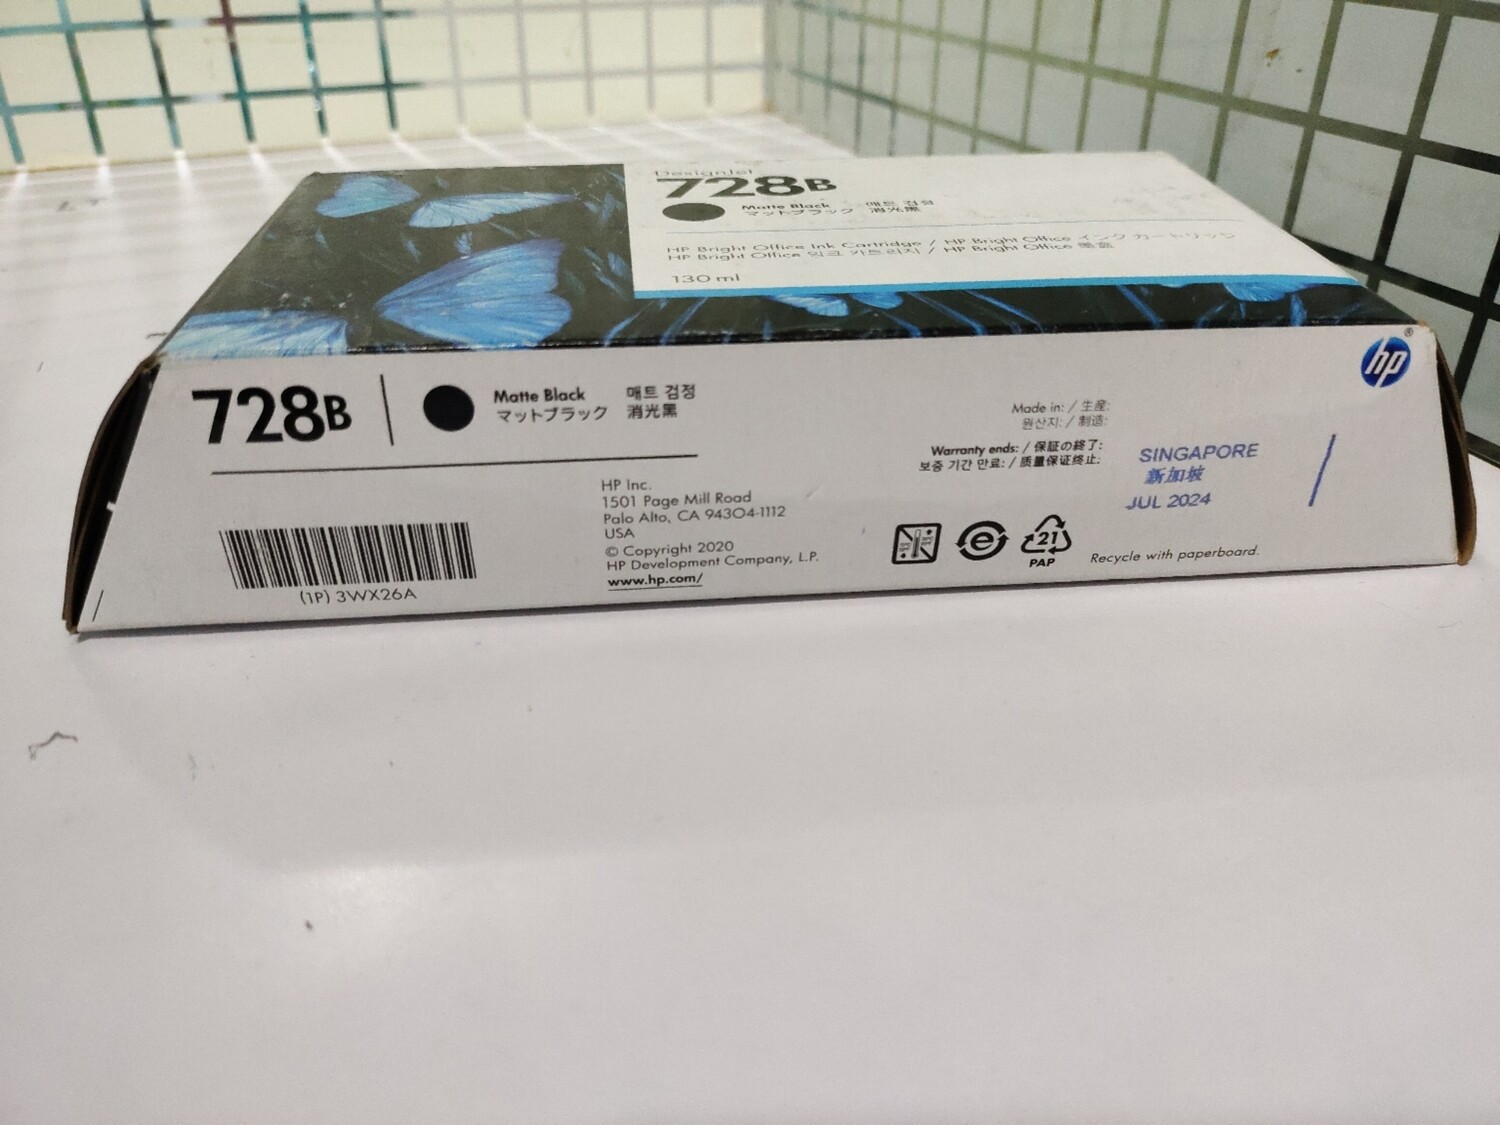 HP DesignJet 728 Matte Black Ink Cartridge, 130ml - Rs.6150